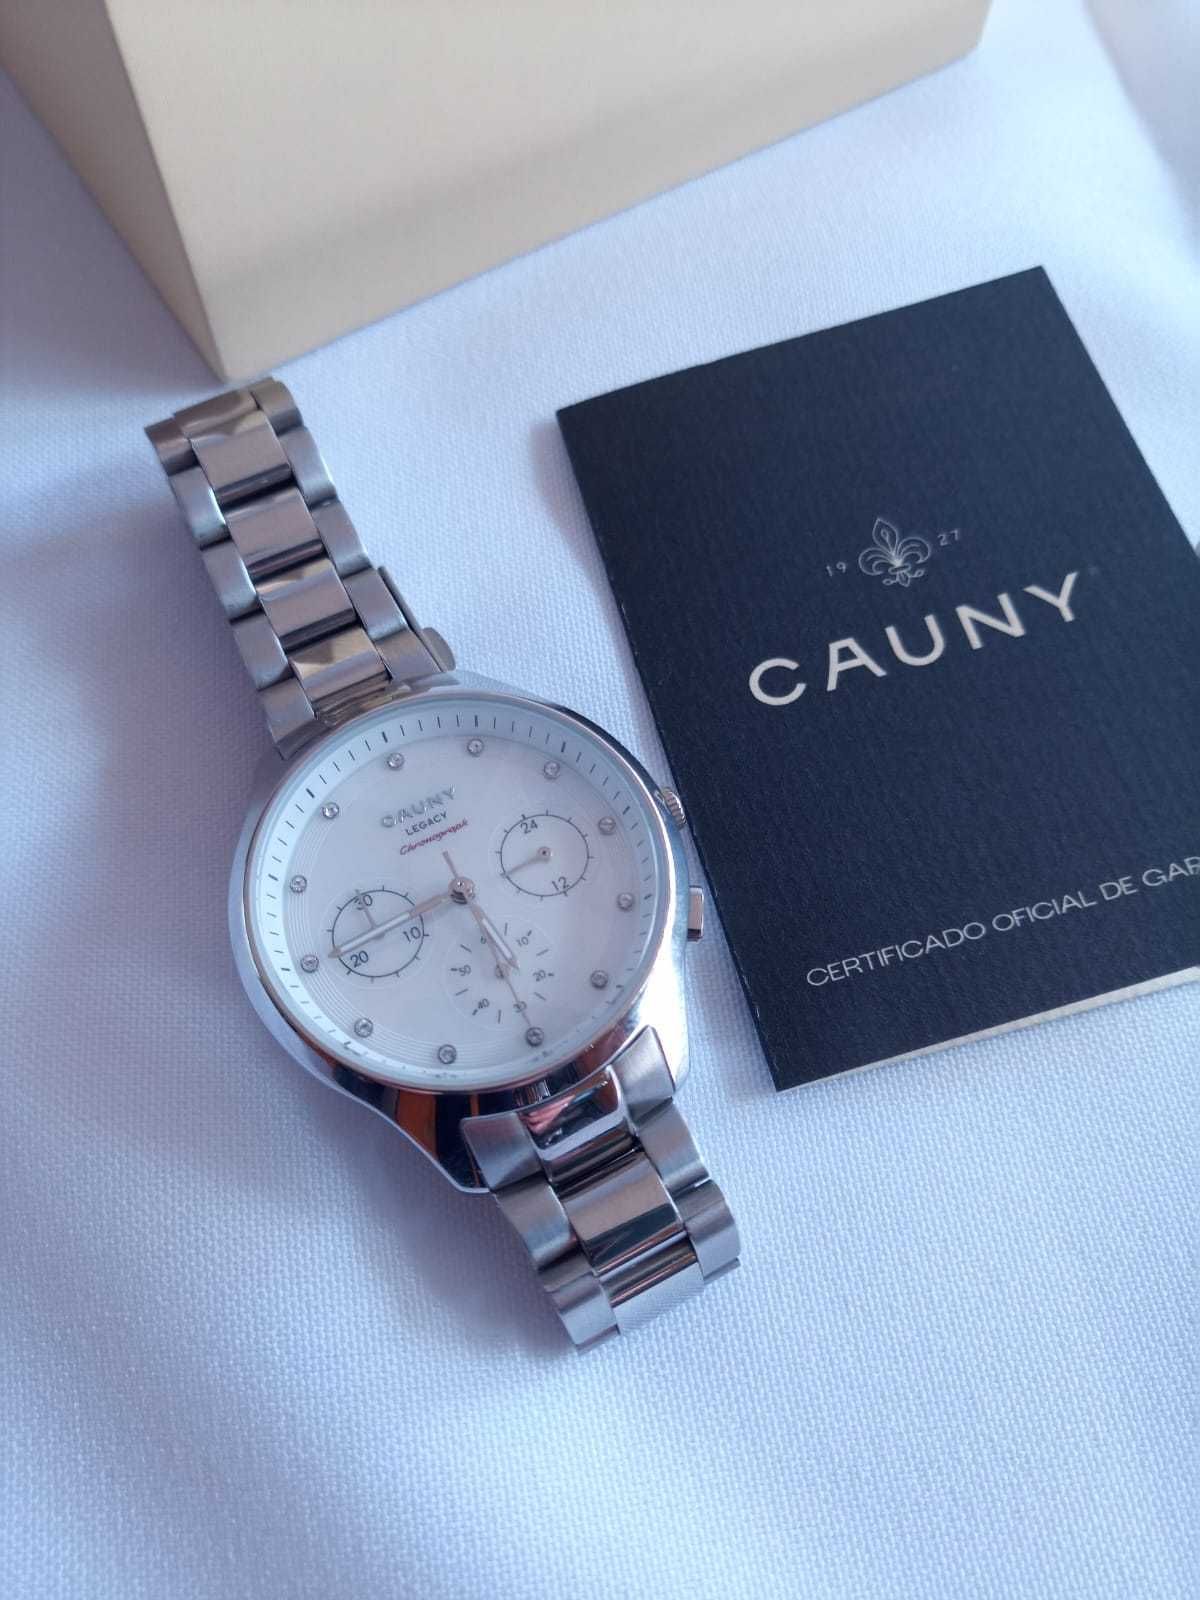 Relógio senhora Cauny Legacy Chronograph NOVO